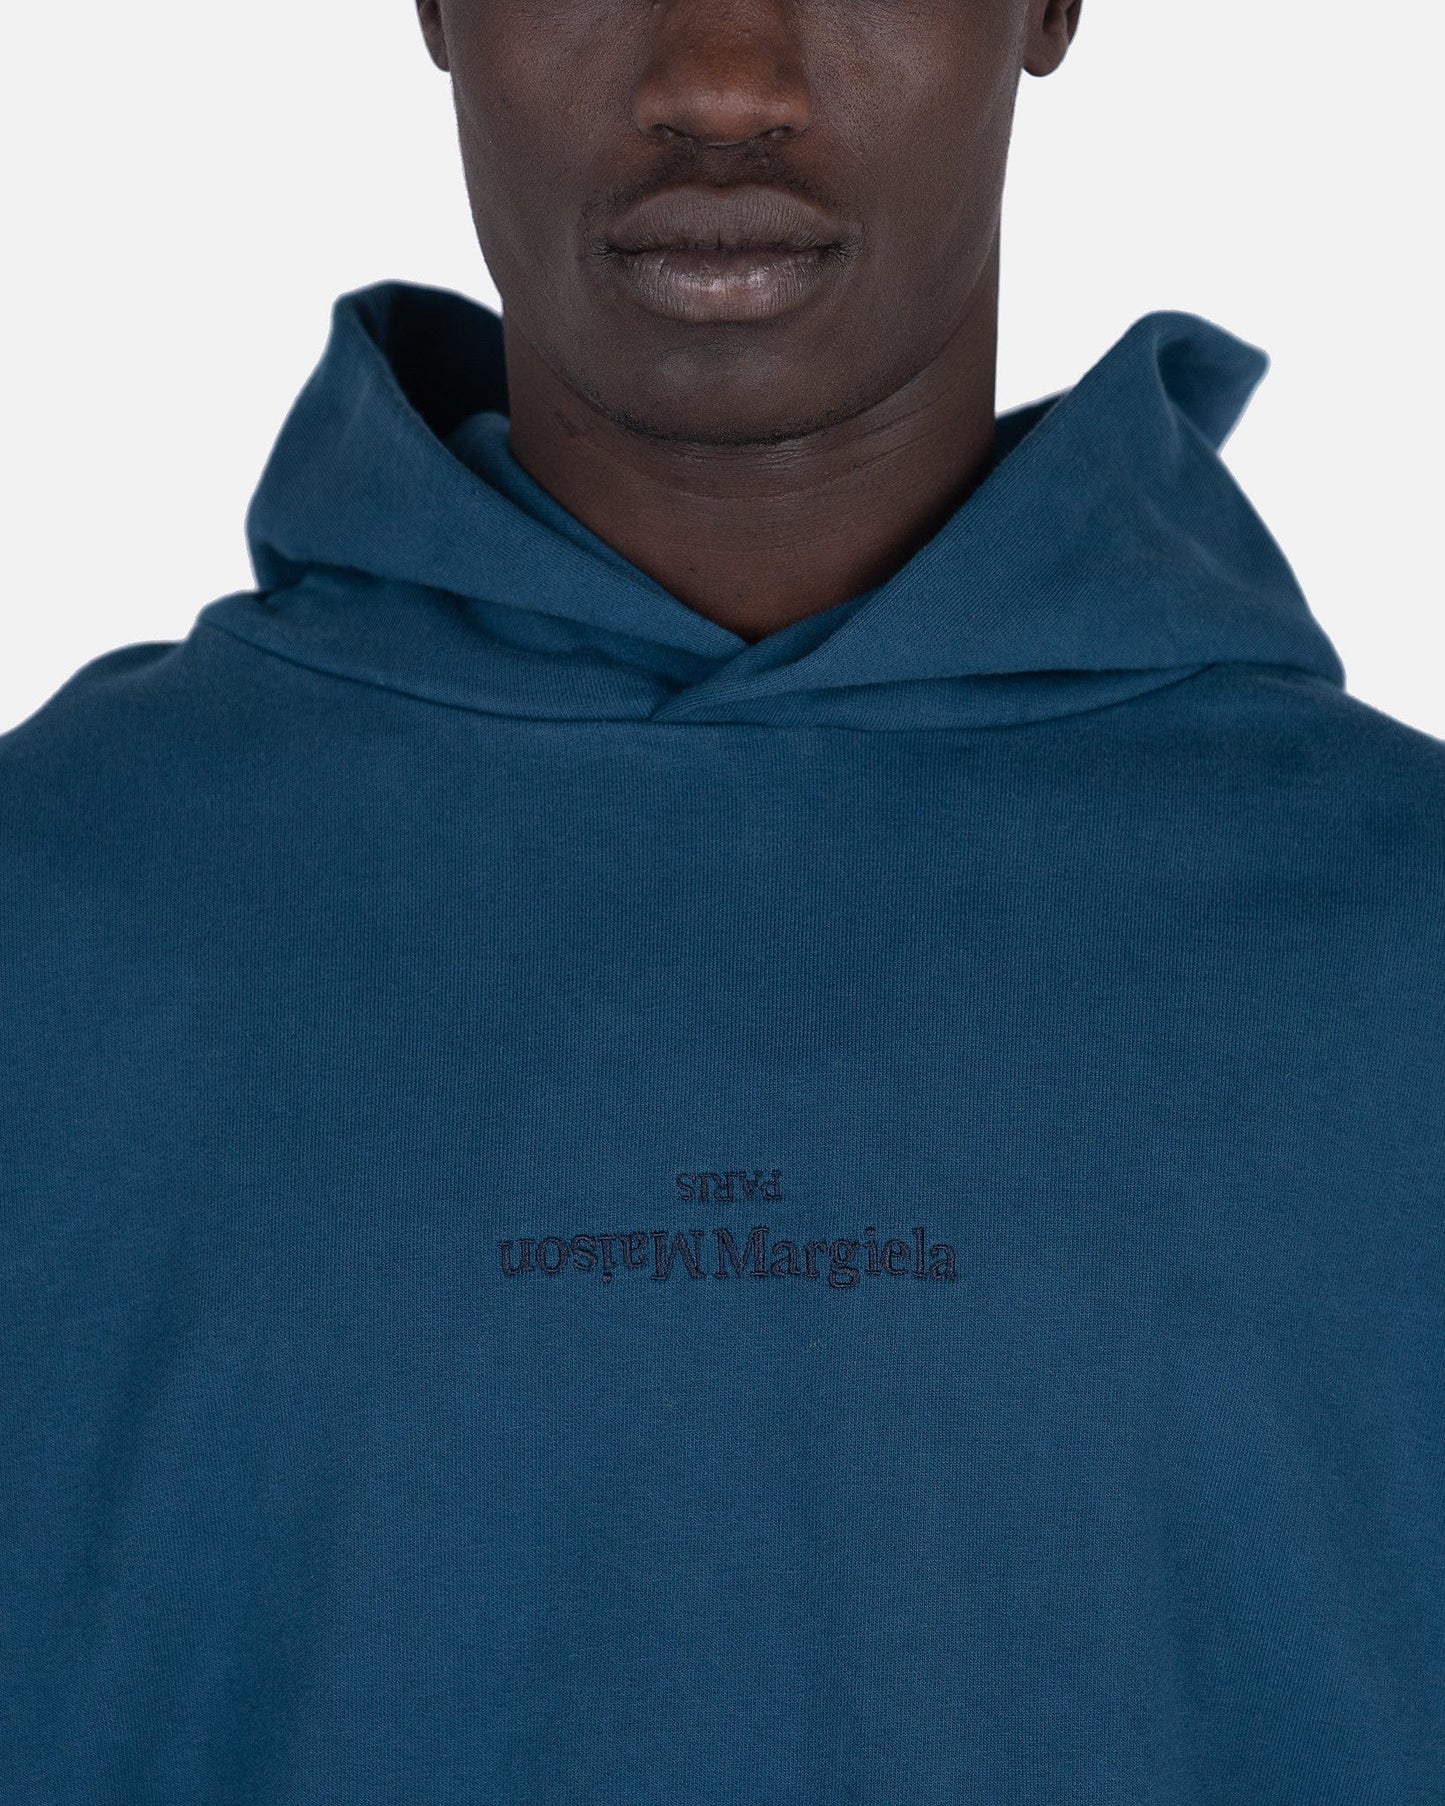 Maison Margiela Men's Sweatshirts Upside Down Logo Hooded Sweatshirt in Petrol